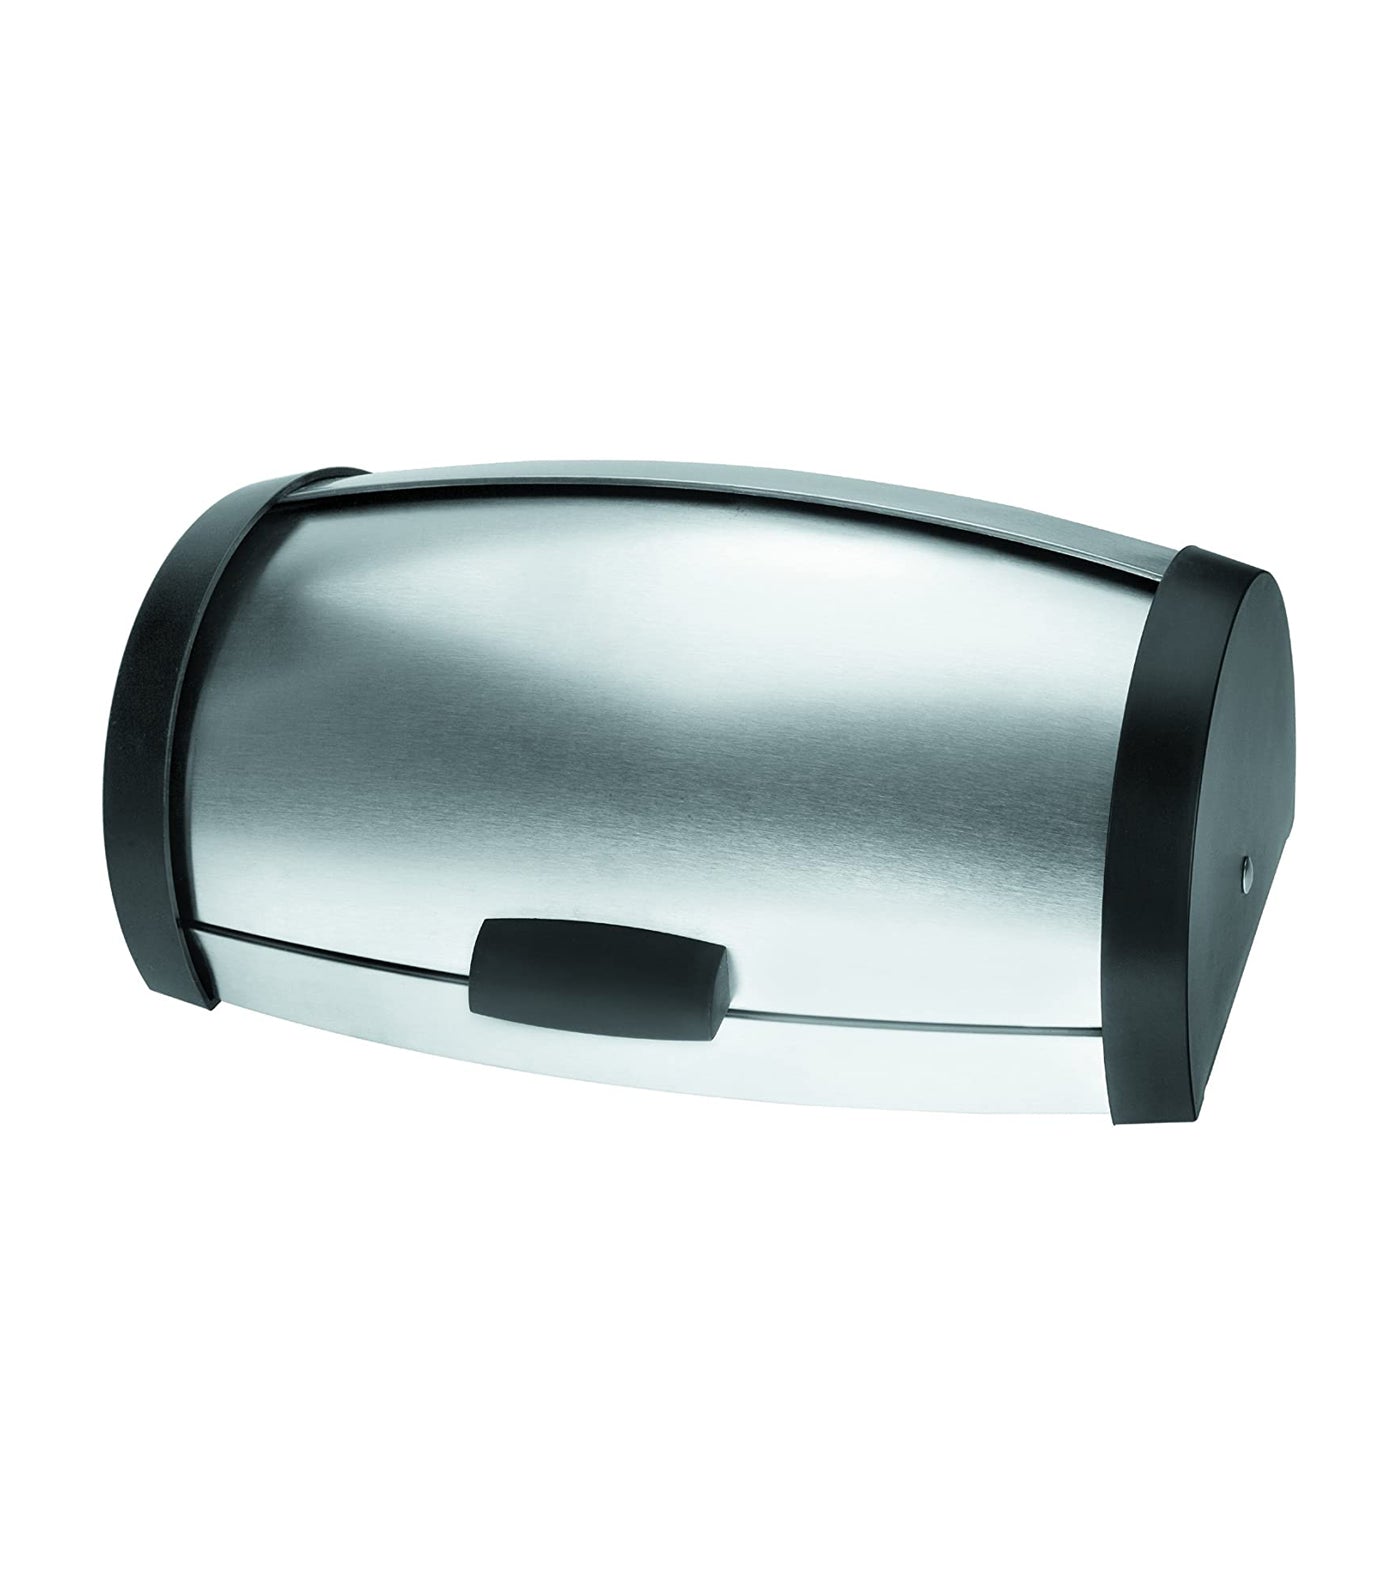 lacor stainless steel bread bin - foldable lid